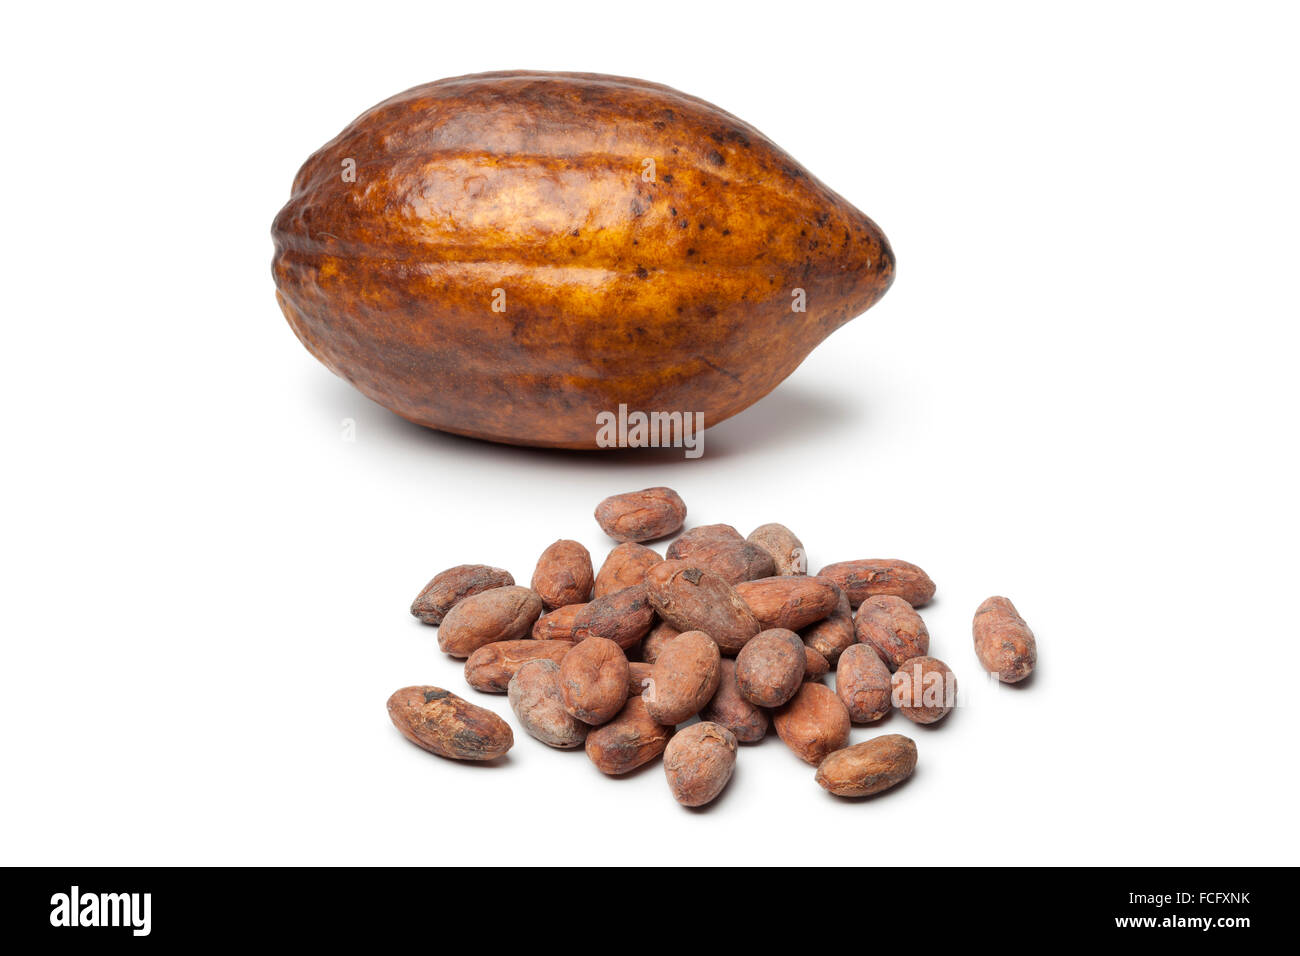 Frutto di cacao e fagioli cocao su sfondo bianco Foto Stock